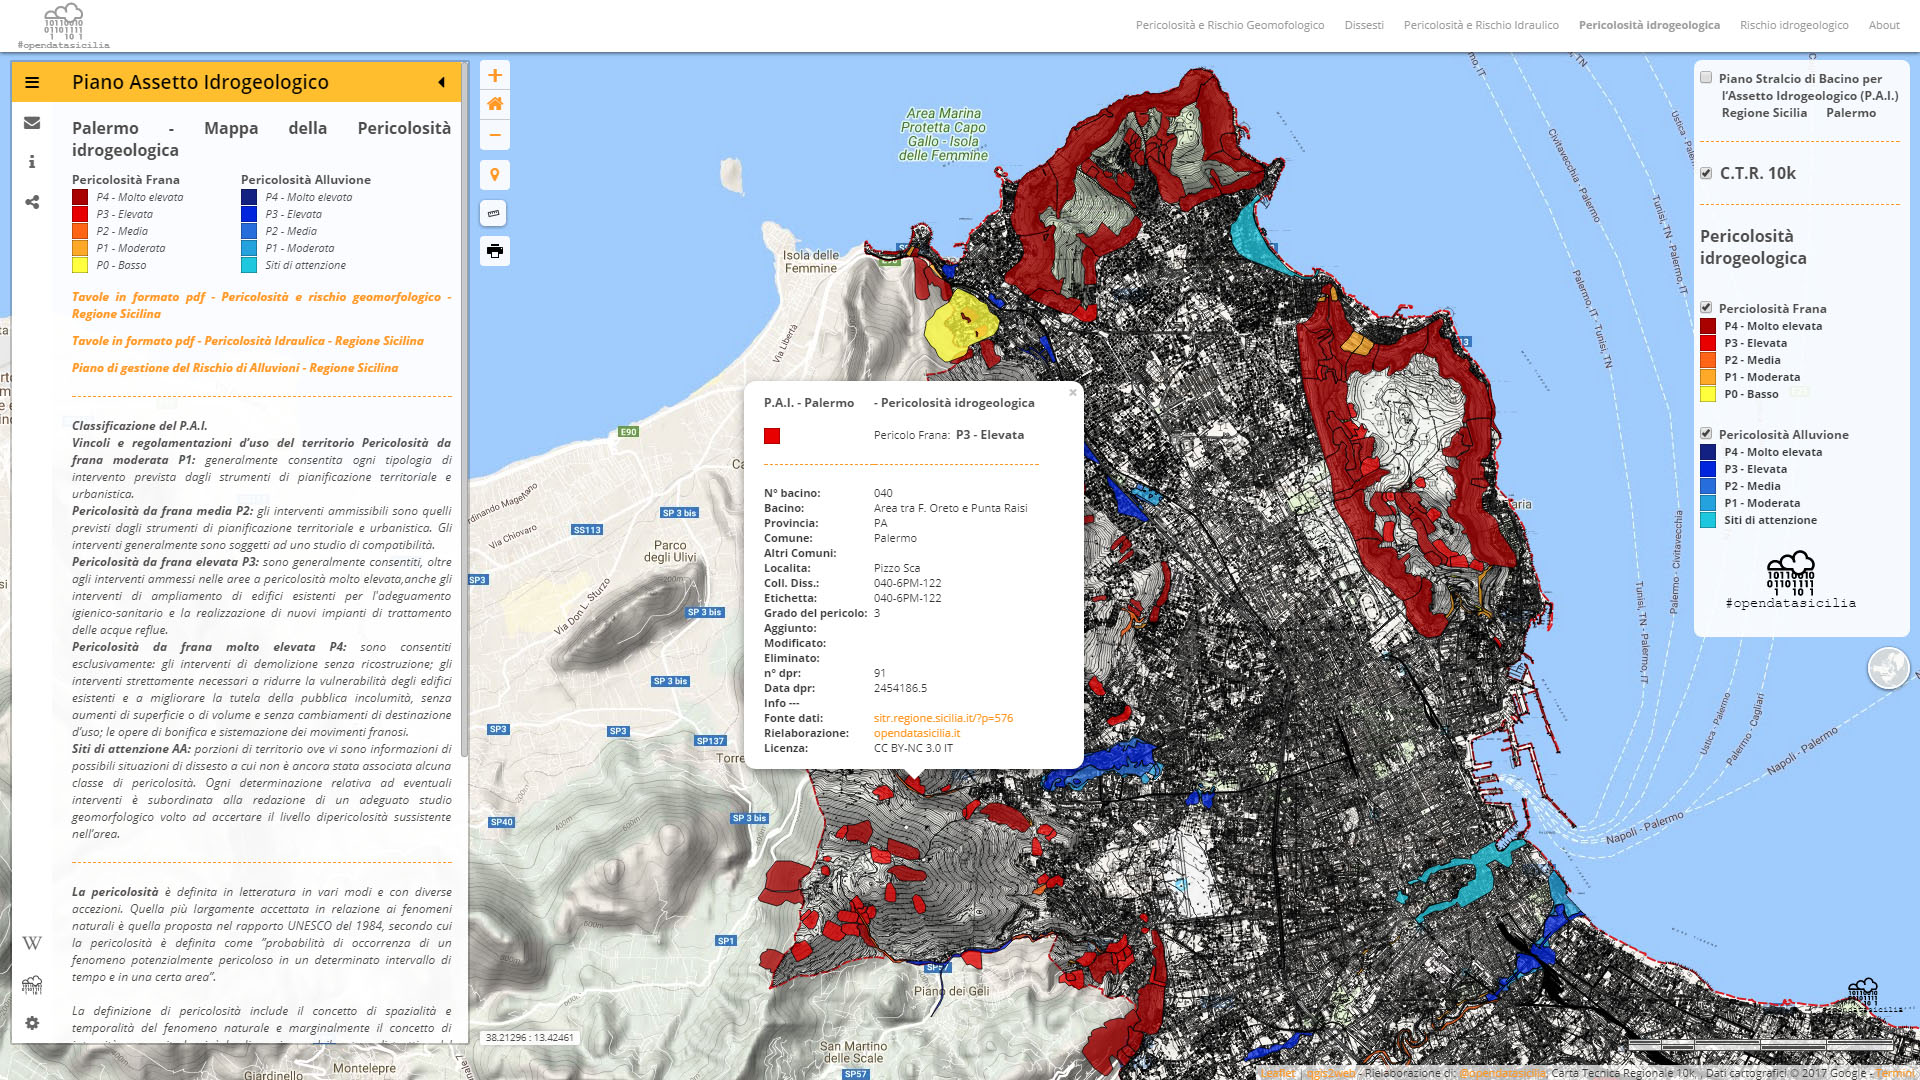 Palermo, Piano per l’Assetto Idrogeologico (P.A.I.) mappa delle pericolosità e rischio geomorfologico, realizzata con Qgis e Leaflet